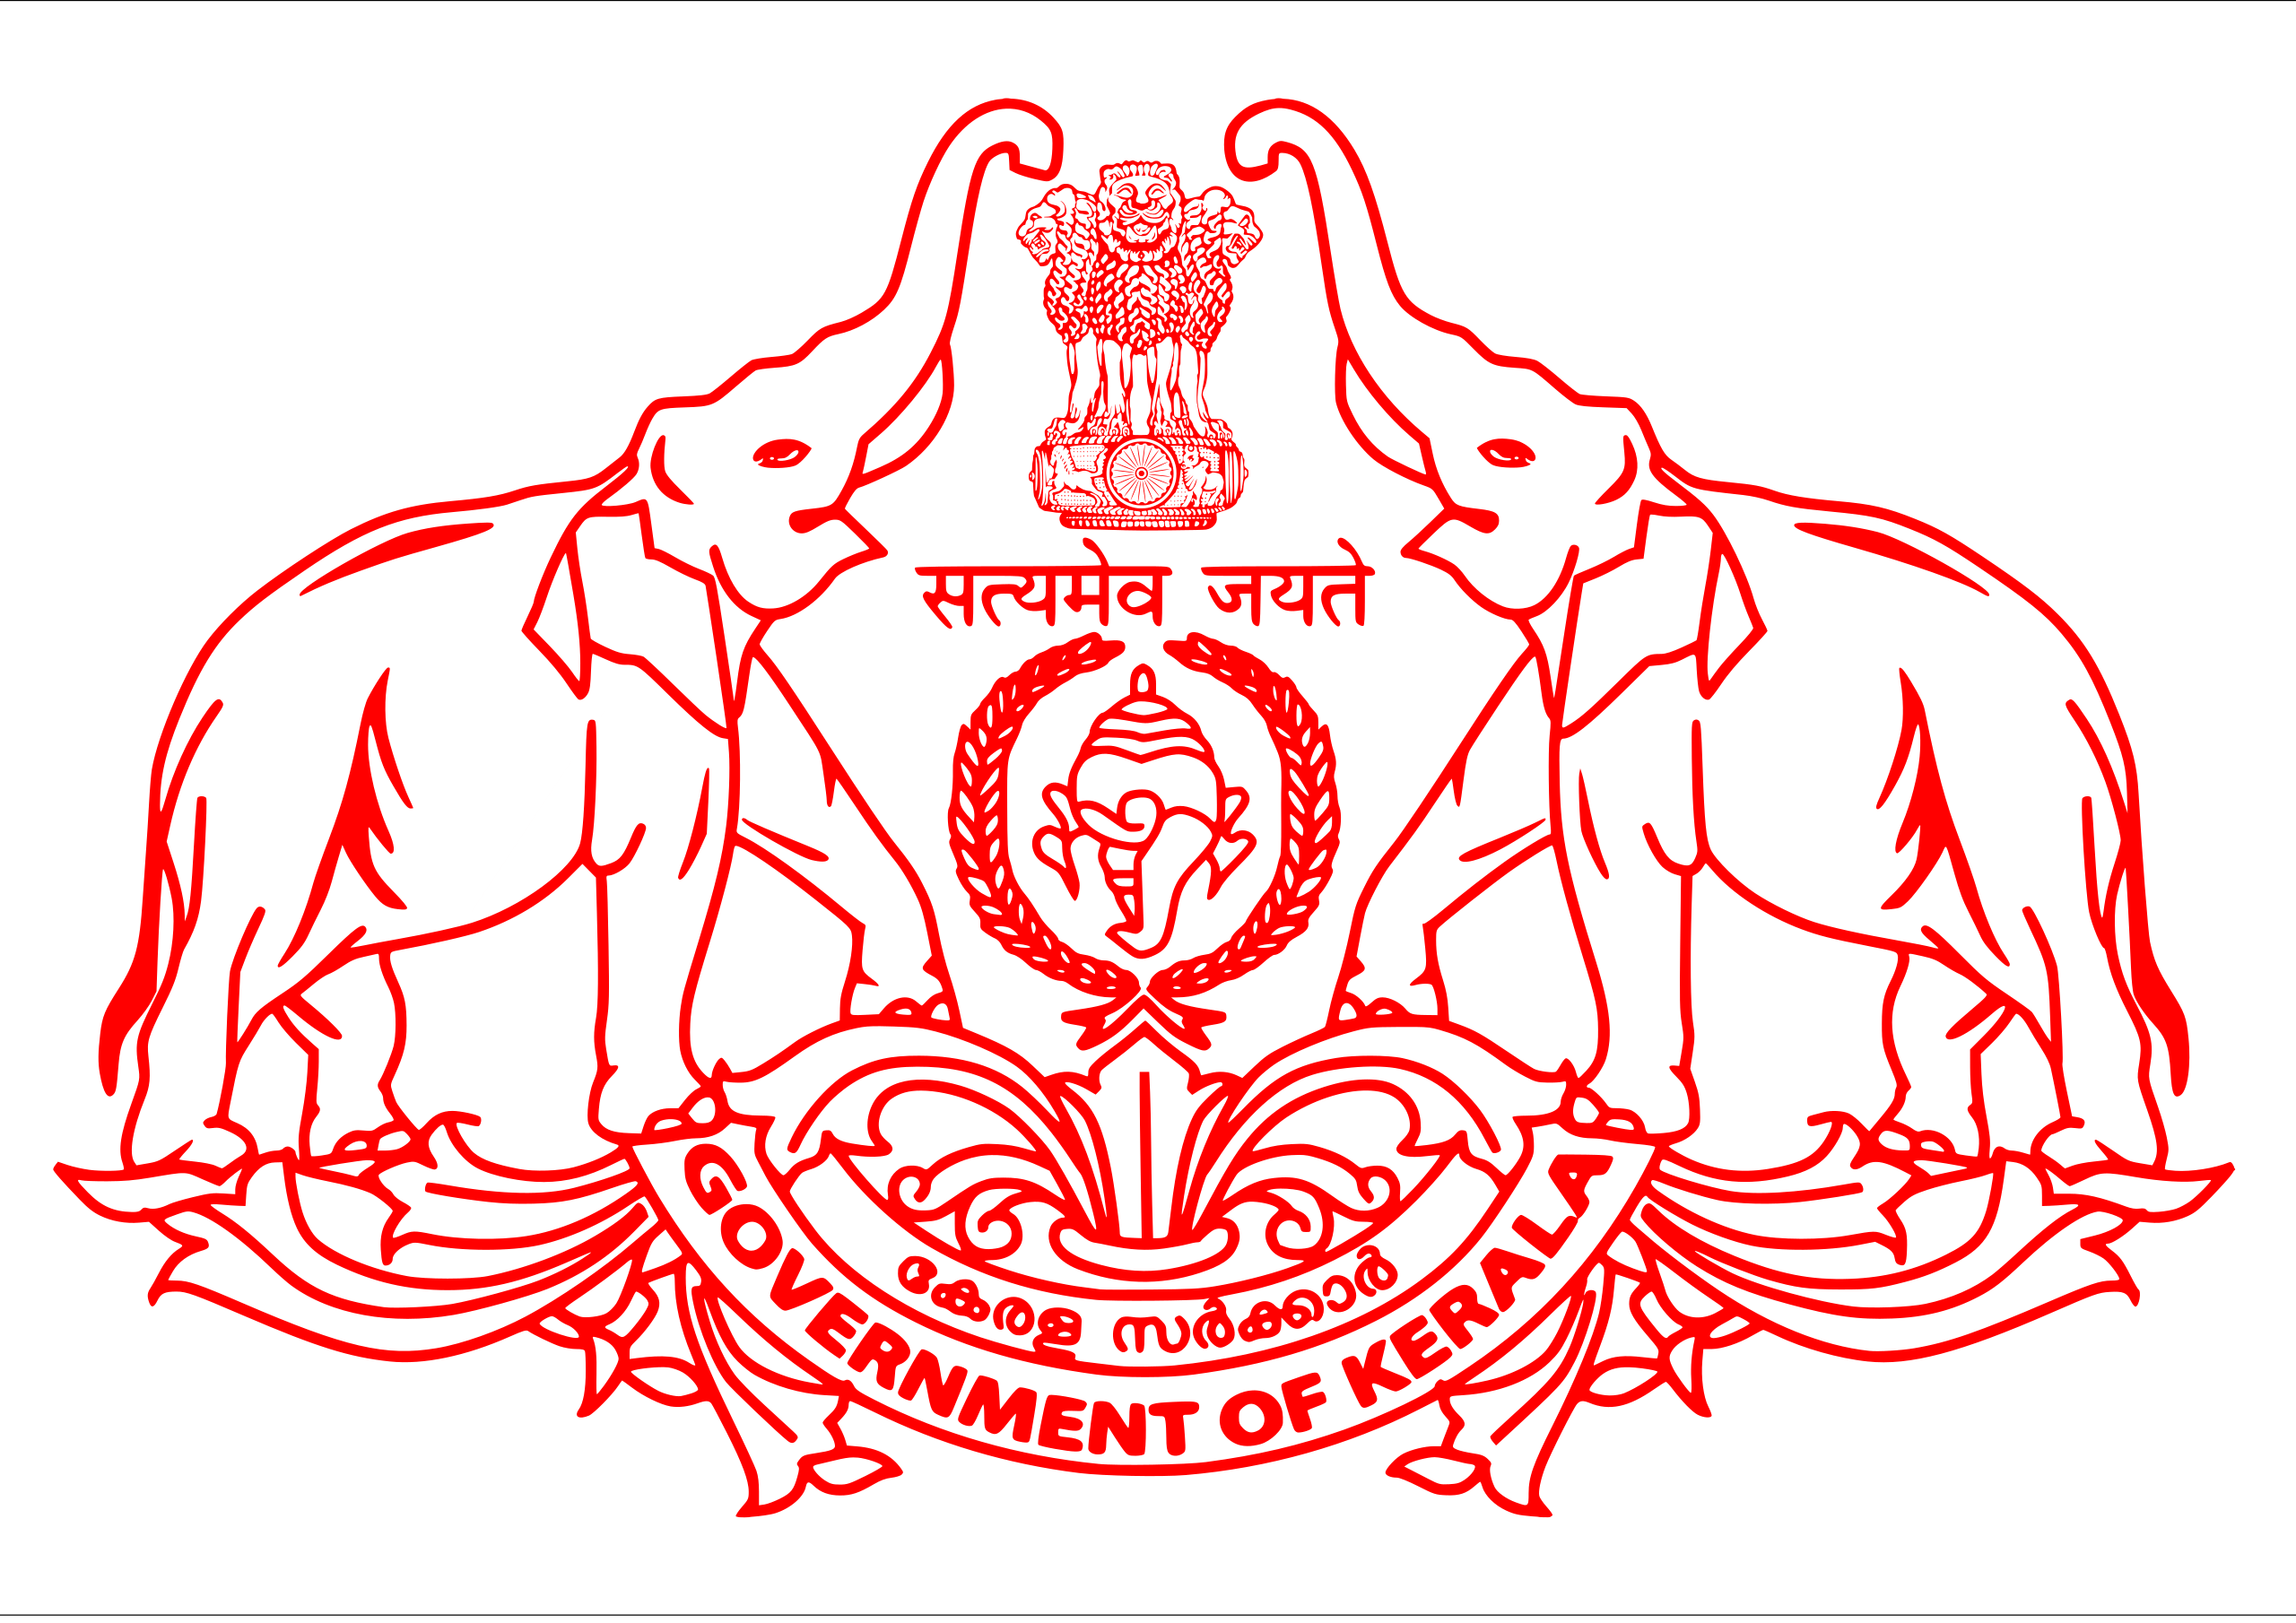 Emblem of Kerala